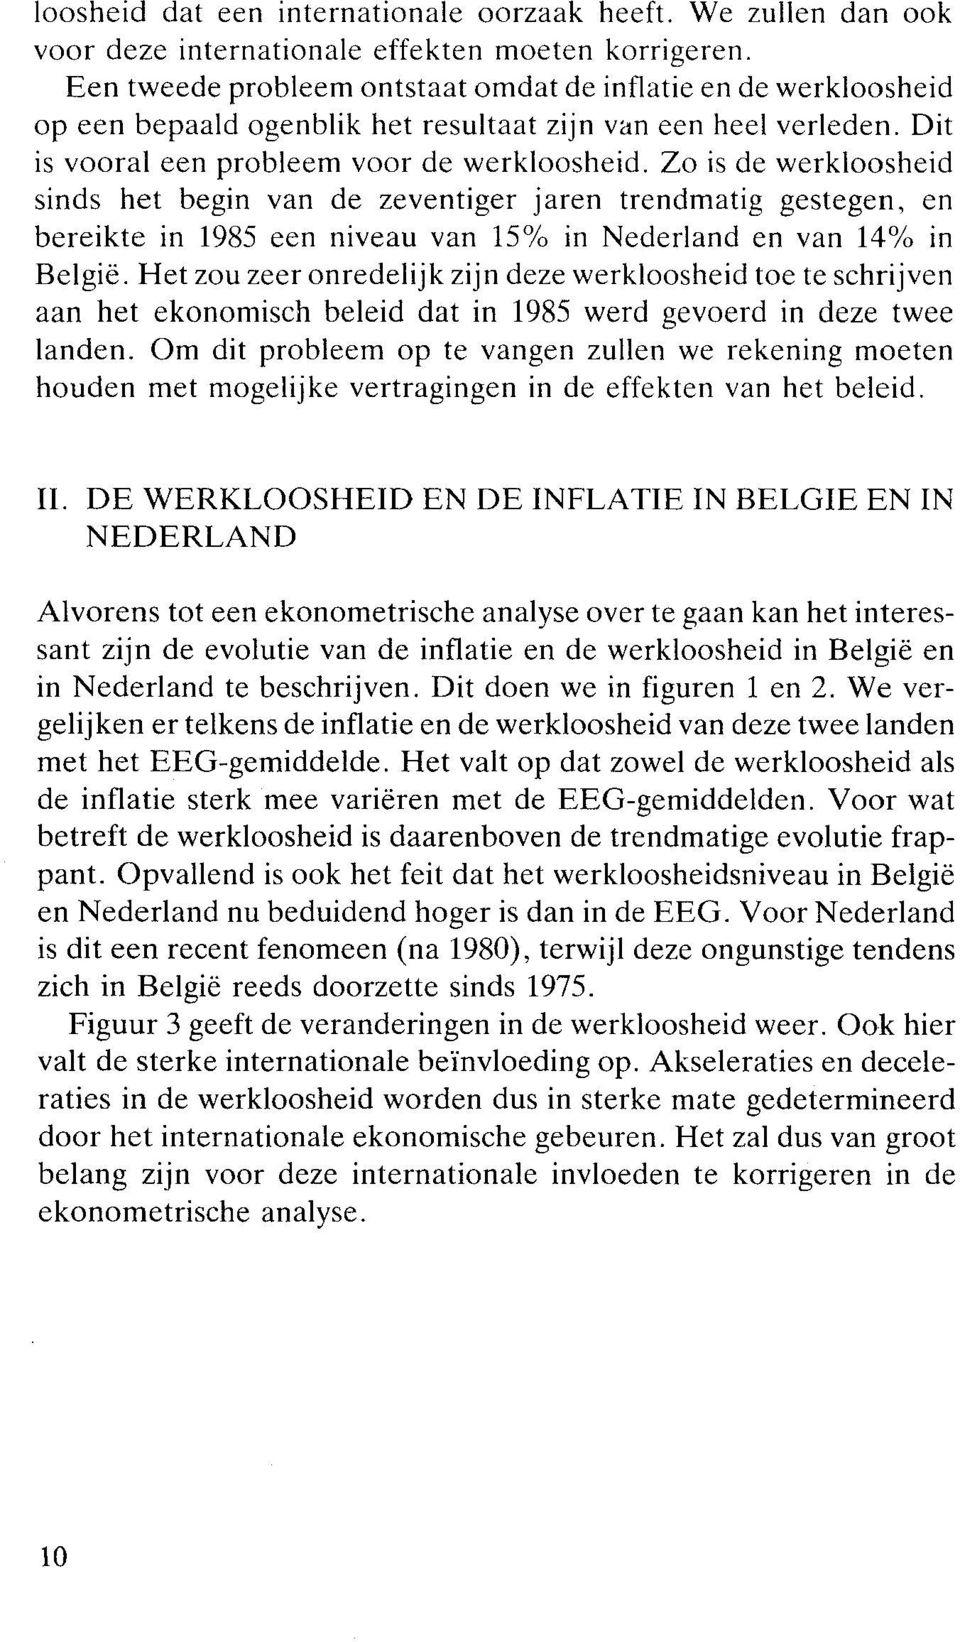 Zo is de werkloosheid sinds het begin van de zeventiger jaren trendmatig gestegen, en bereikte in 1985 een niveau van 15% in Nederland en van 14% in België.